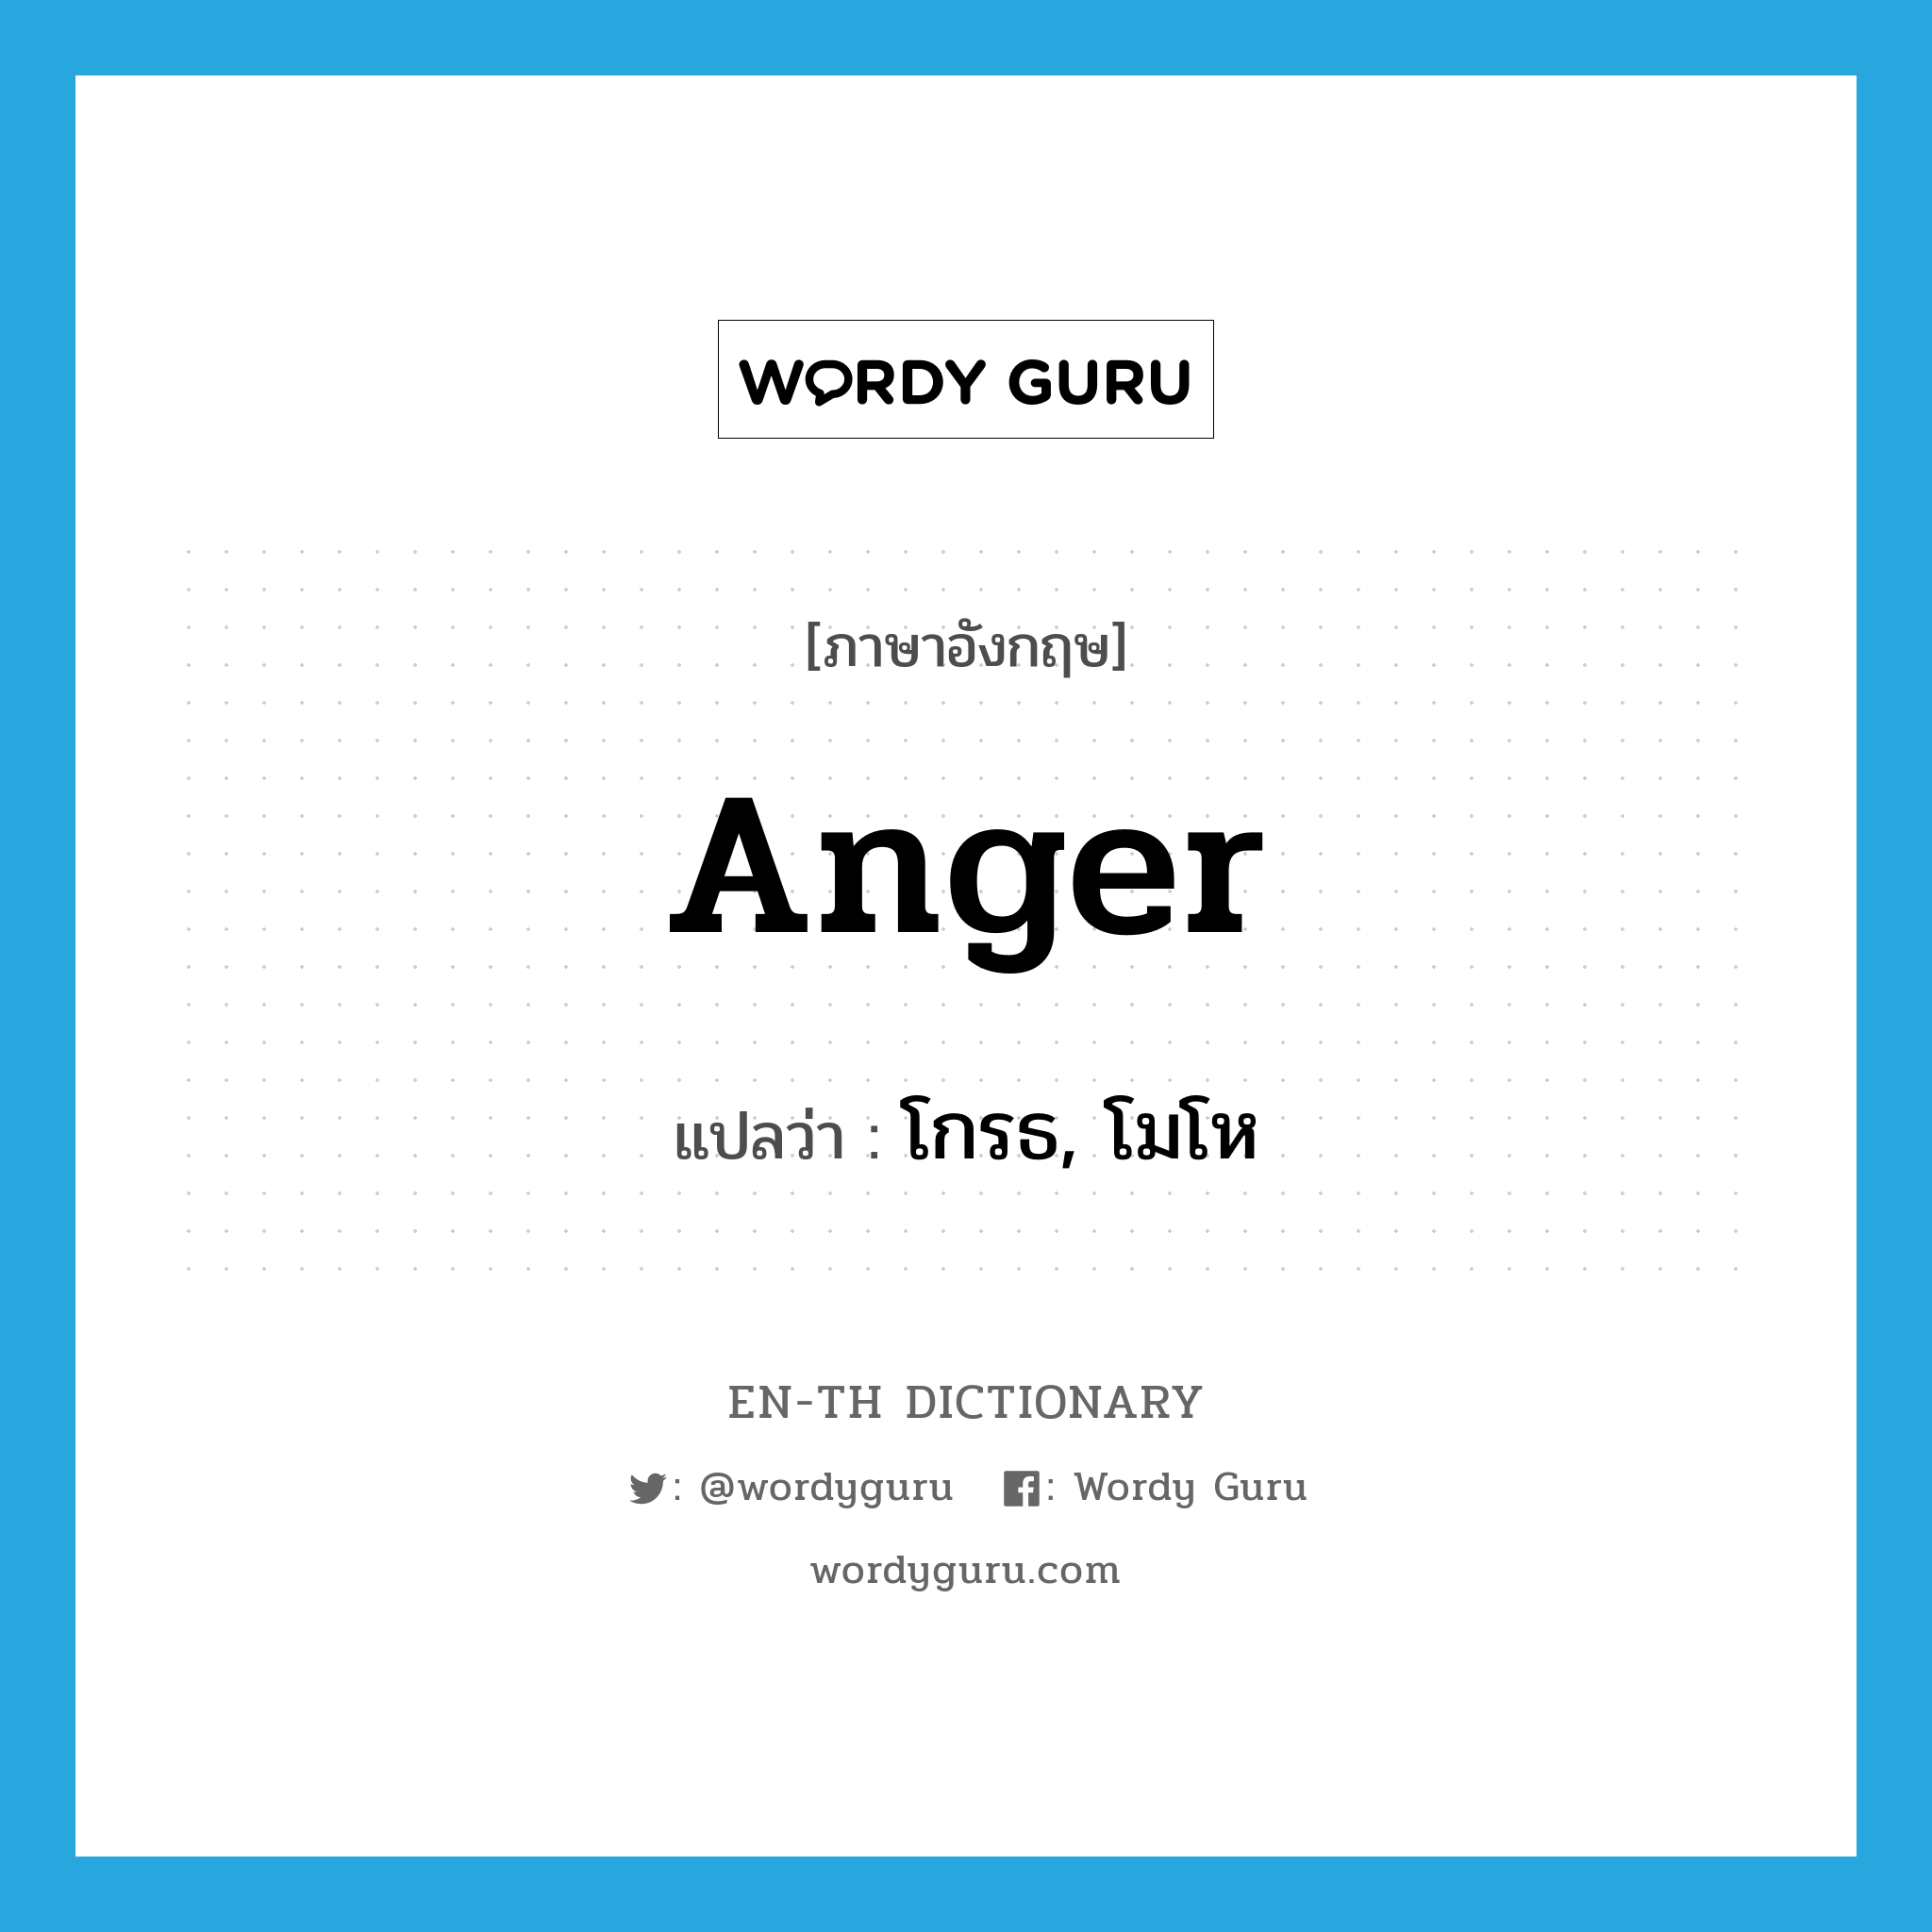 โกรธ, โมโห ภาษาอังกฤษ?, คำศัพท์ภาษาอังกฤษ โกรธ, โมโห แปลว่า anger ประเภท VI หมวด VI